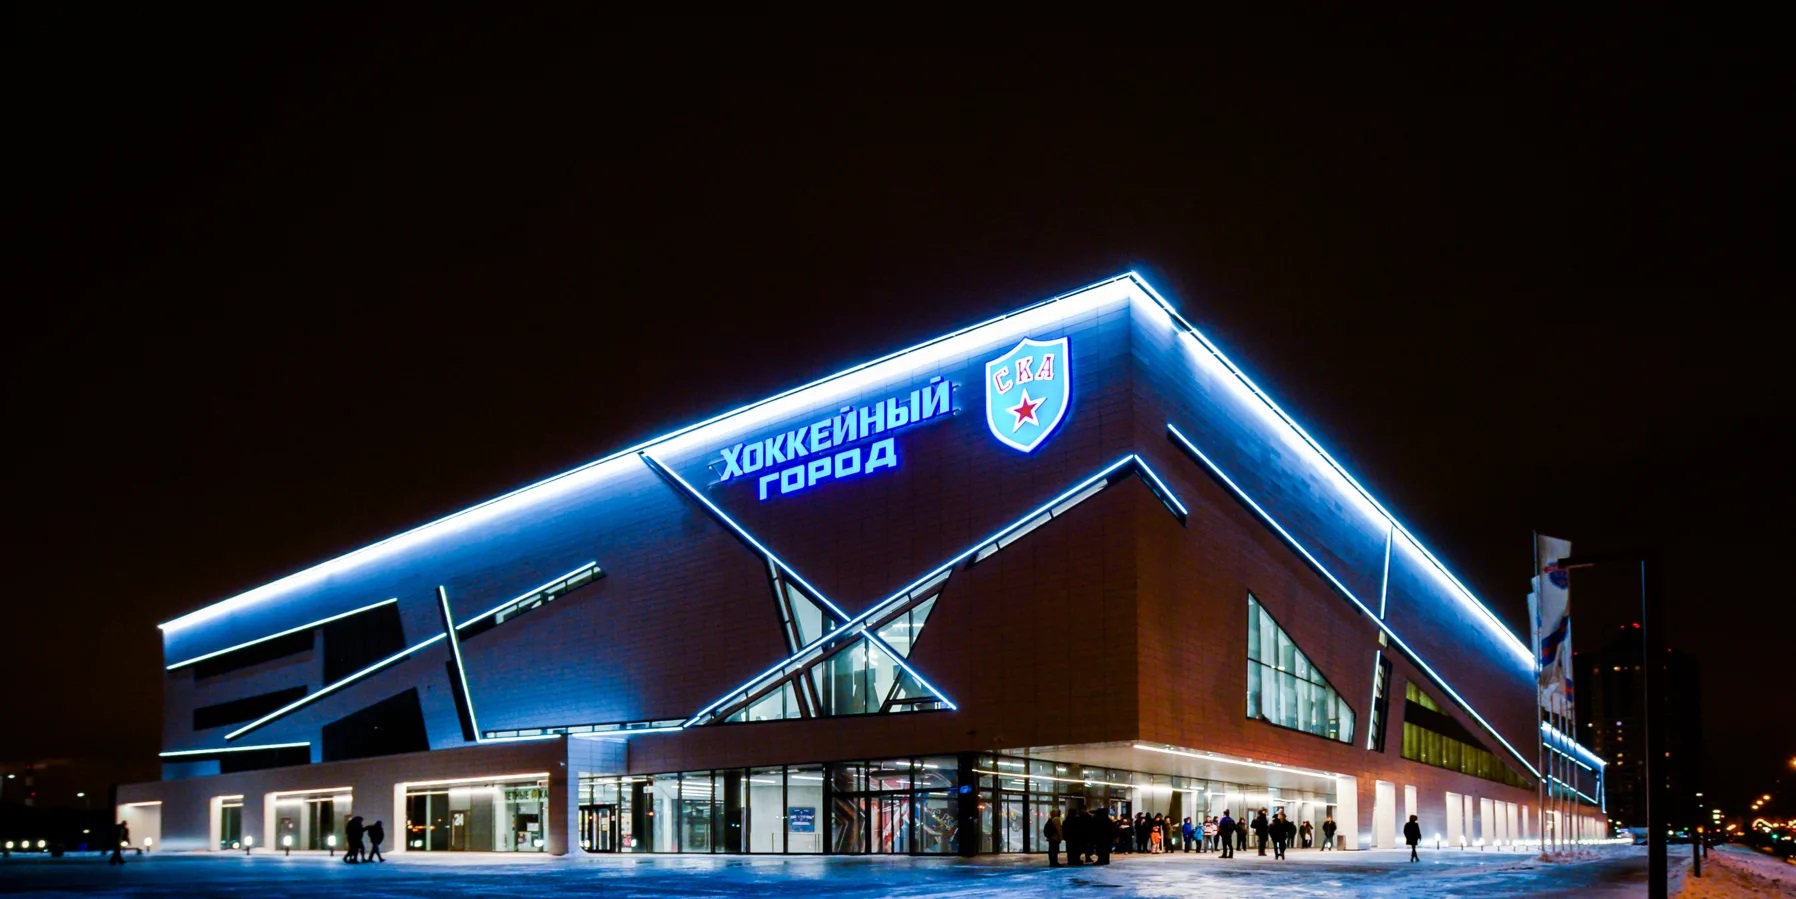 Хоккейный город Санкт-Петербург Арена